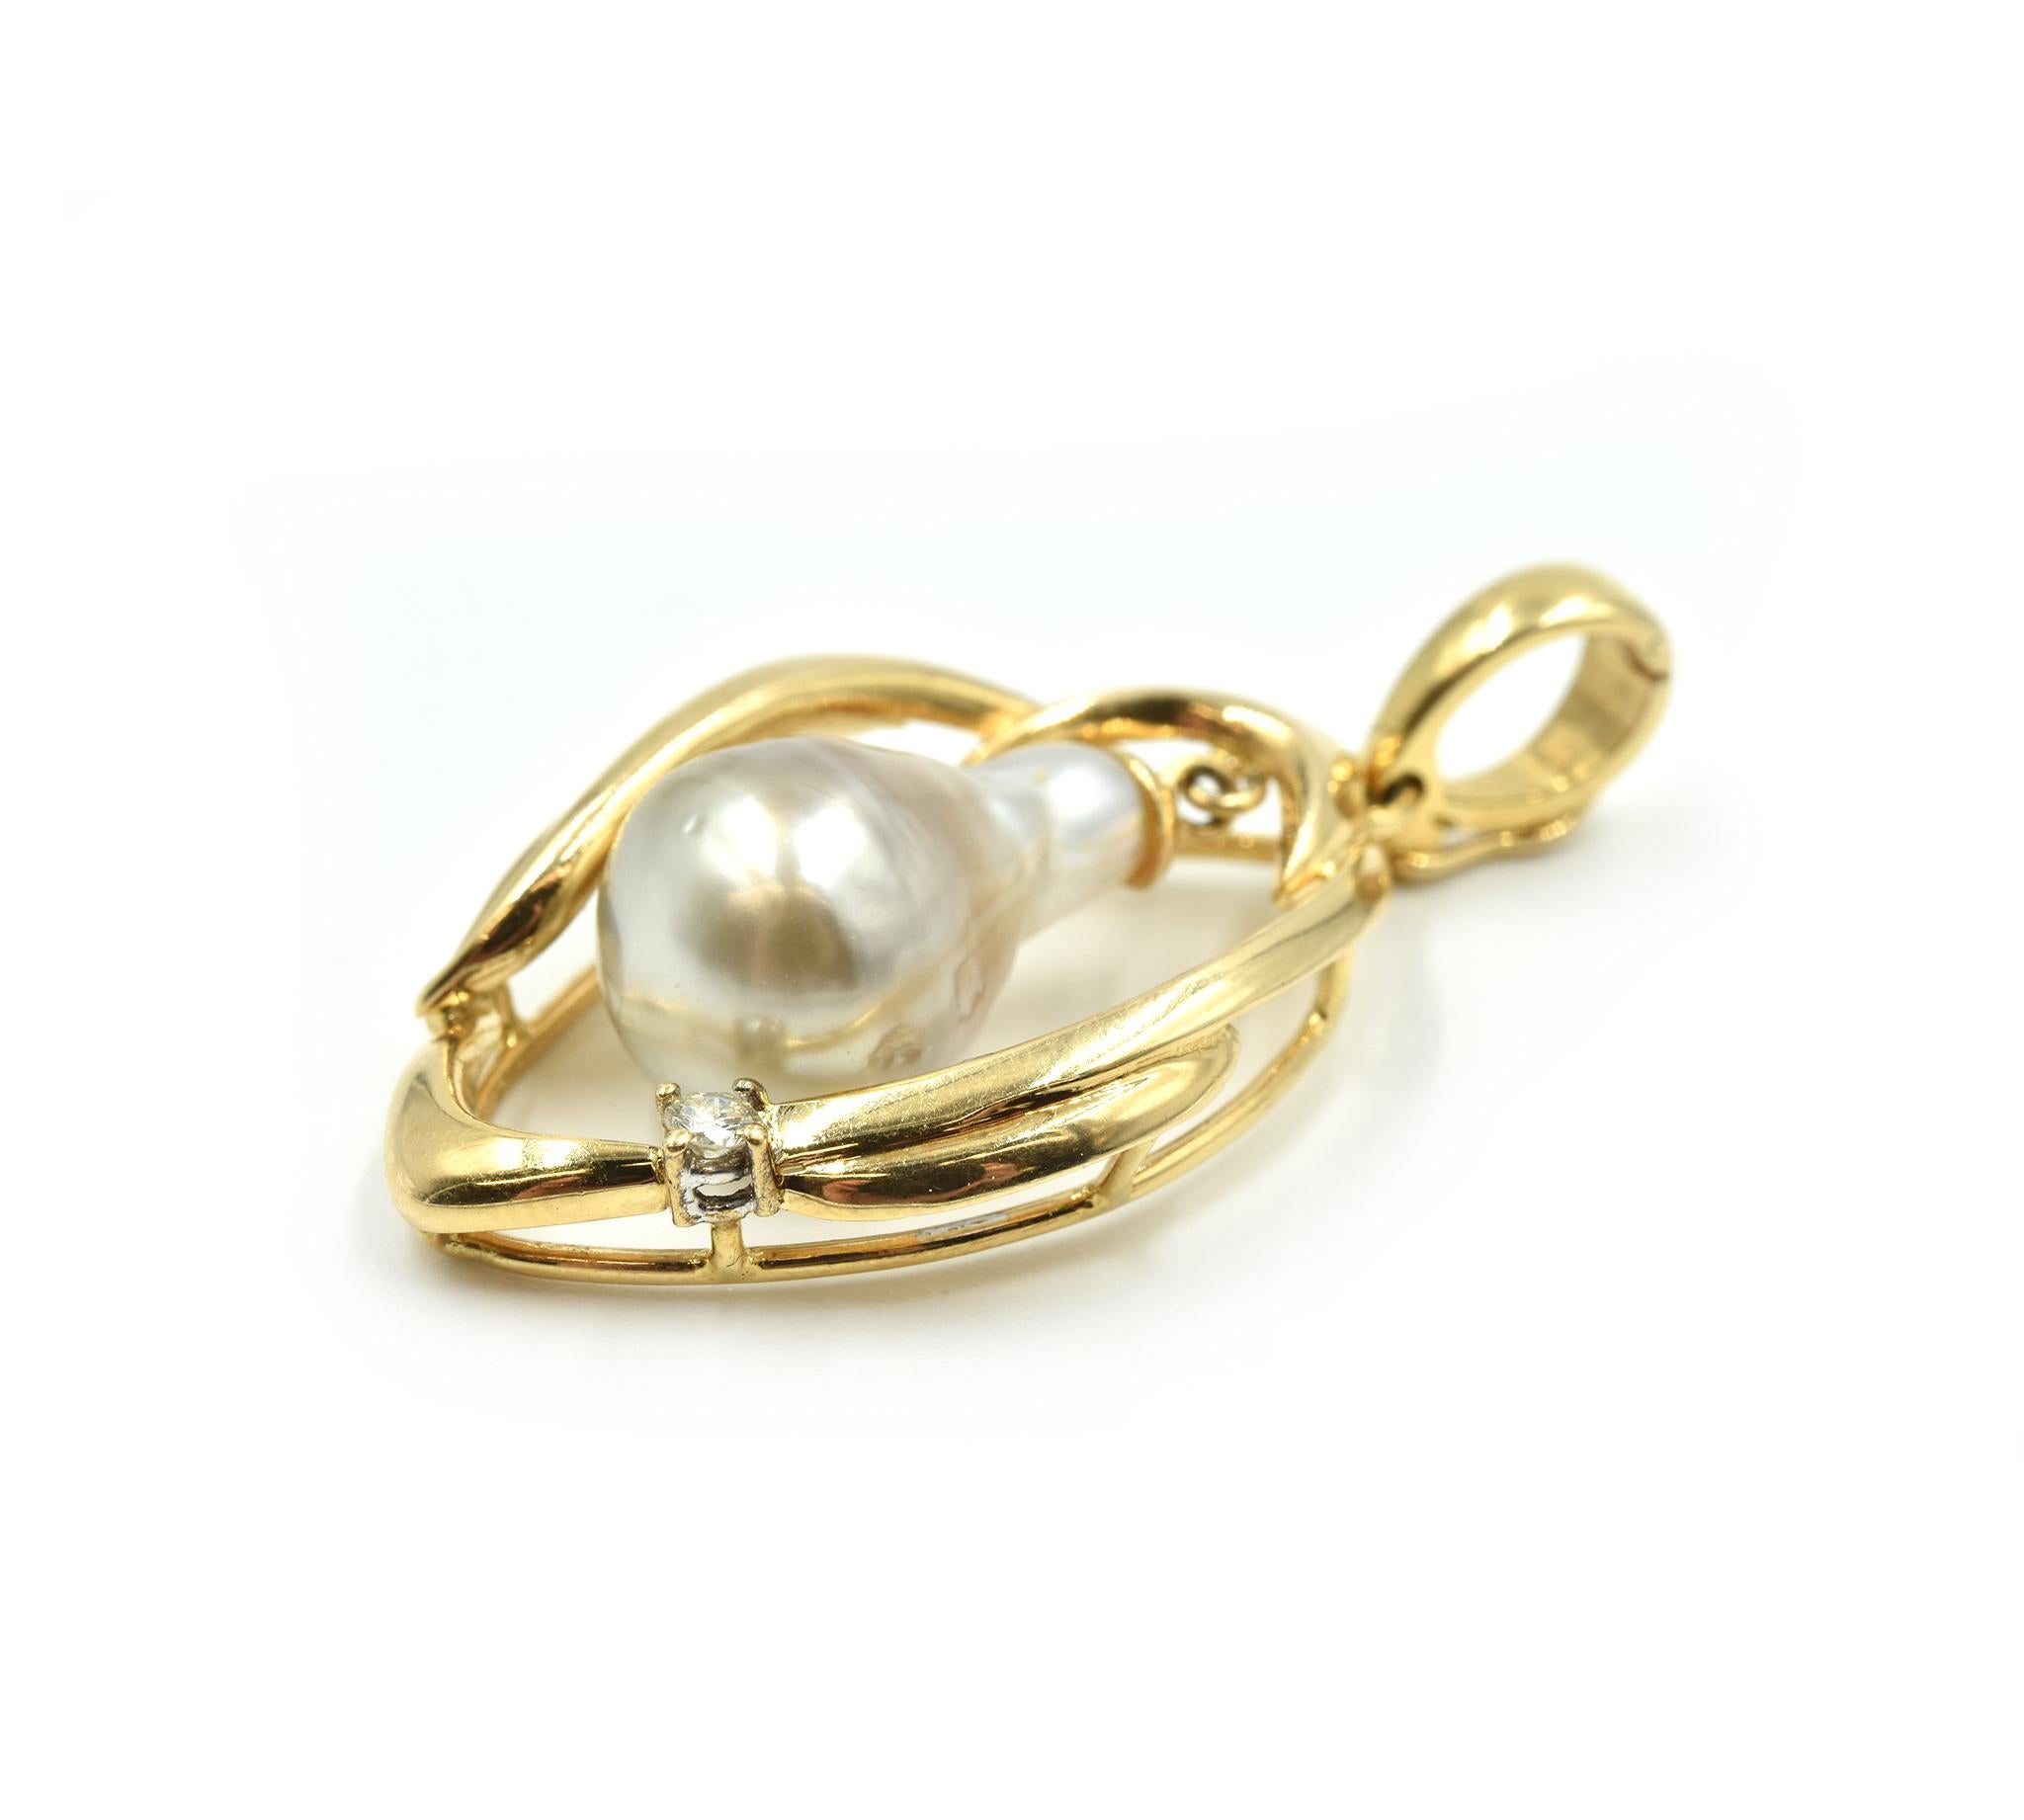 Designer : sur mesure
Matériau : or jaune 14k
Diamants : un diamant rond brillant de 0,05 carat
Perle : perle de culture de forme ovale de 10,50 mm
Dimensions : le pendentif mesure 1 1/2 pouces de long et 3/4 pouces de large
Poids : 6,60 grammes
